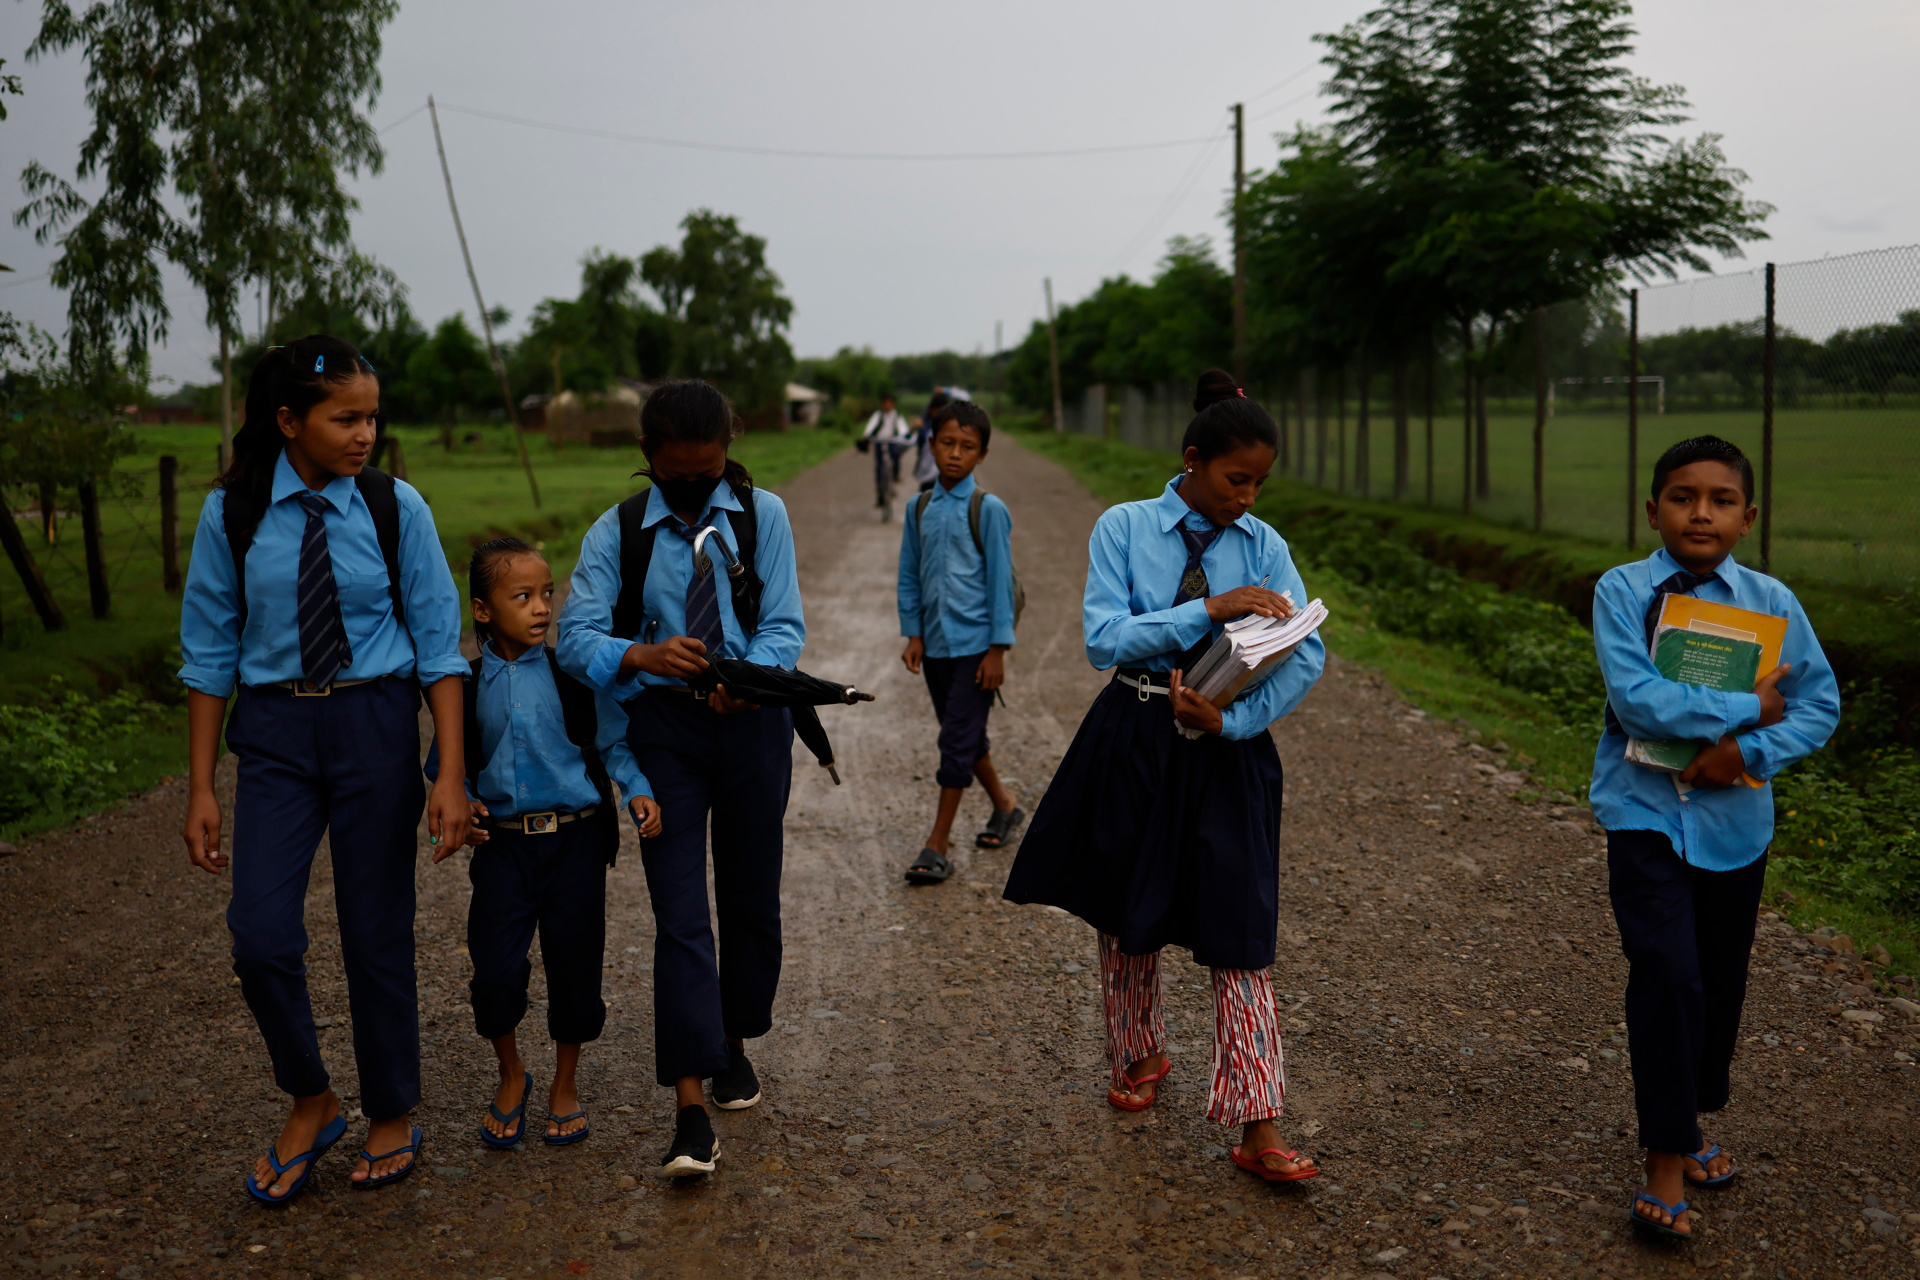 Sunar và con trai cùng bạn học cùng xóm mỗi ngày mất khoảng 20 phút đi bộ đến trường. Sunar cho biết, cô chưa bao giờ thấy vui nhu6 hiện tại 